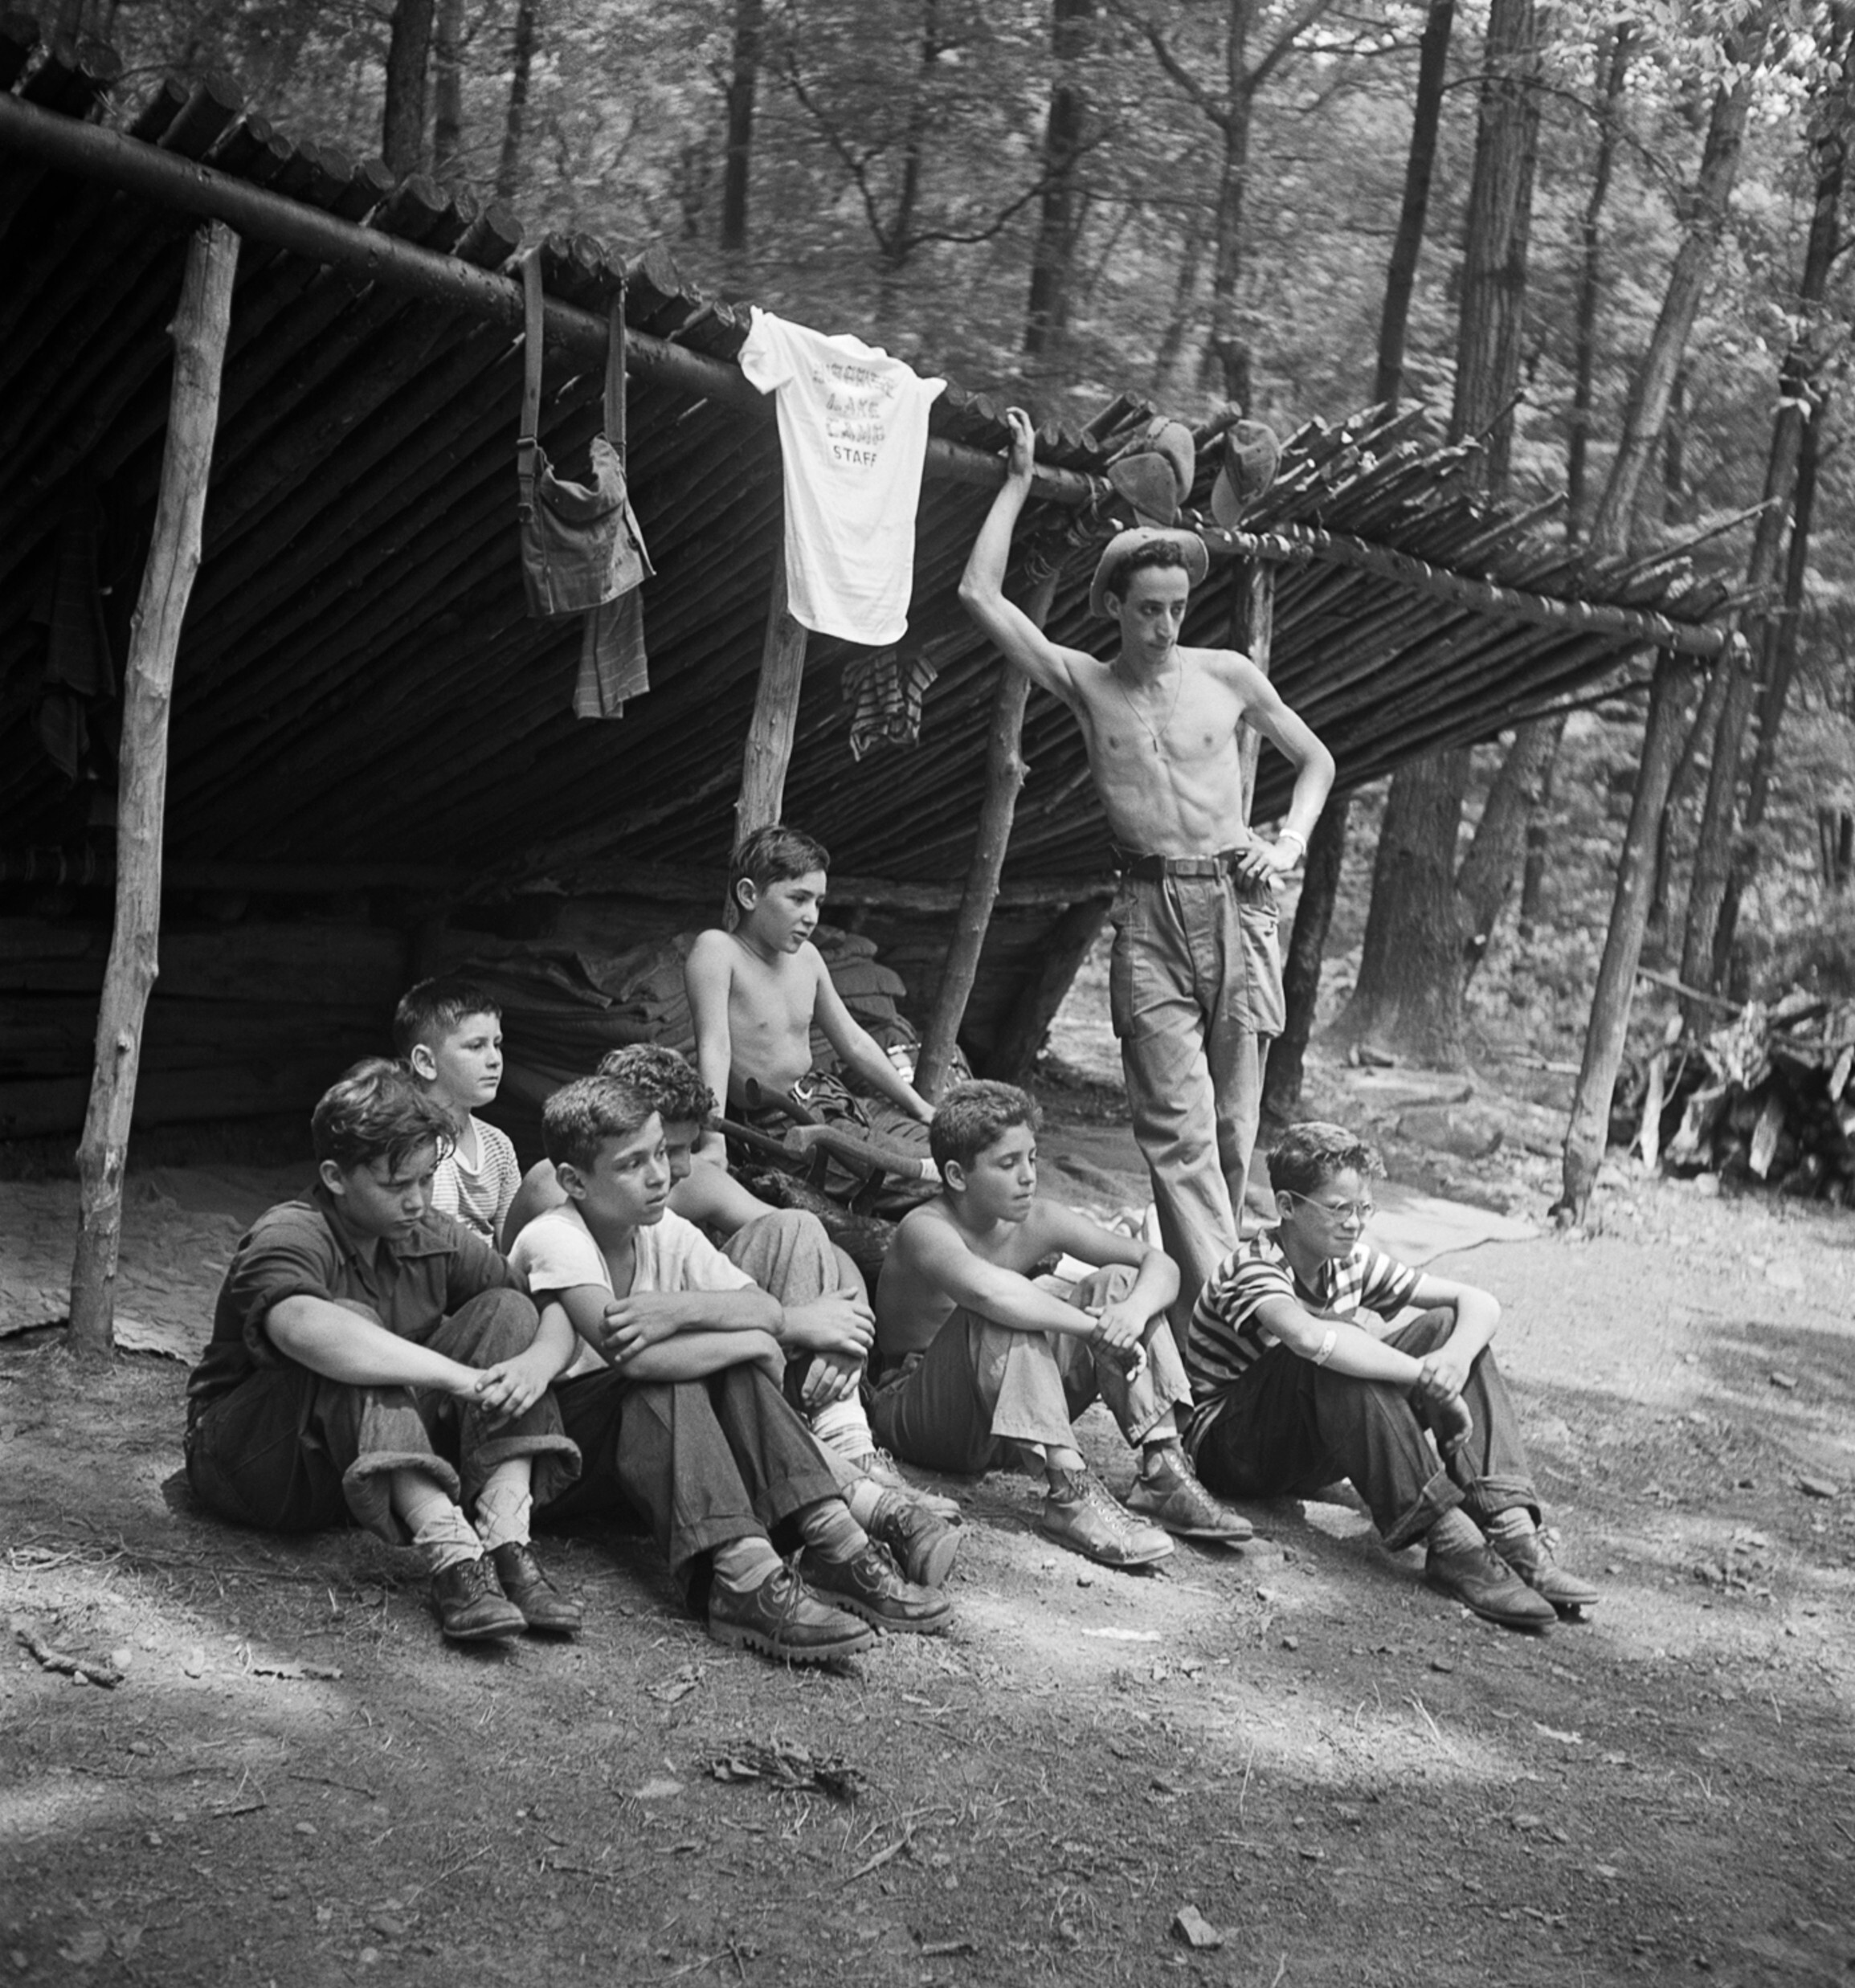 Кемперы и вожатые лагеря Сюрприз-Лейк, Колд-Спринг, Нью-Йорк, 1940-е годы. Фотограф Роман Вишняк